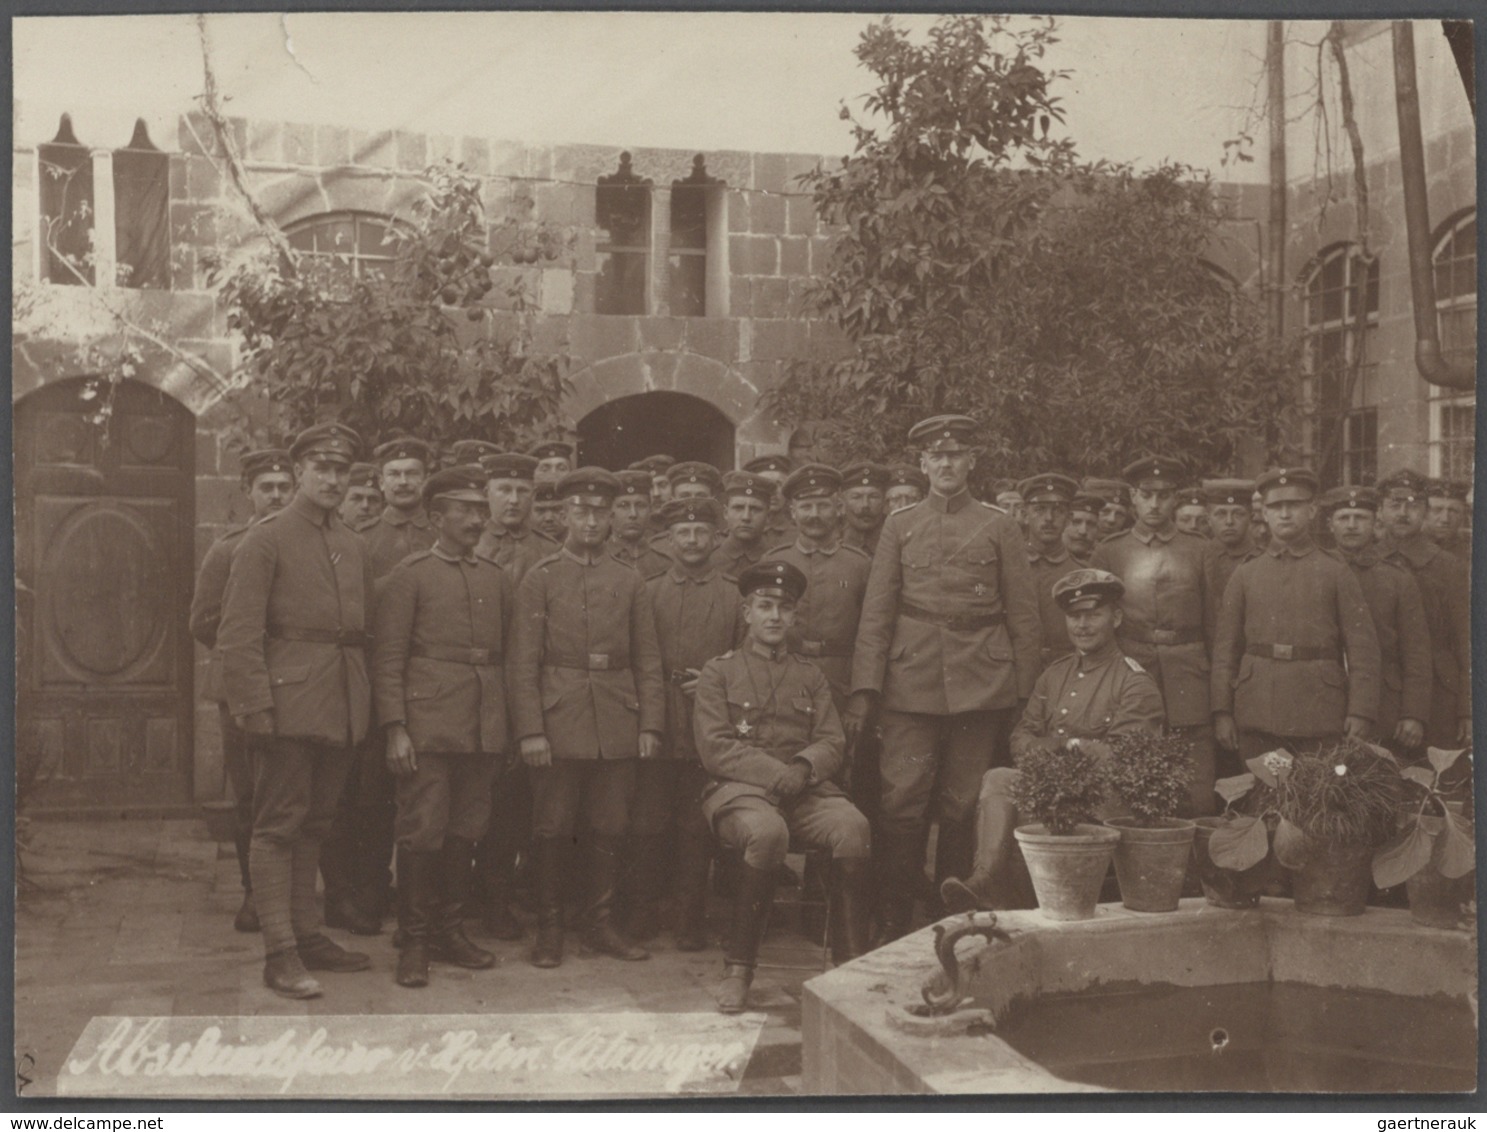 Türkei - Besonderheiten: 1917/1918: Fotosammlung eines deutschen Soldaten der Armme Fernsprechabteil